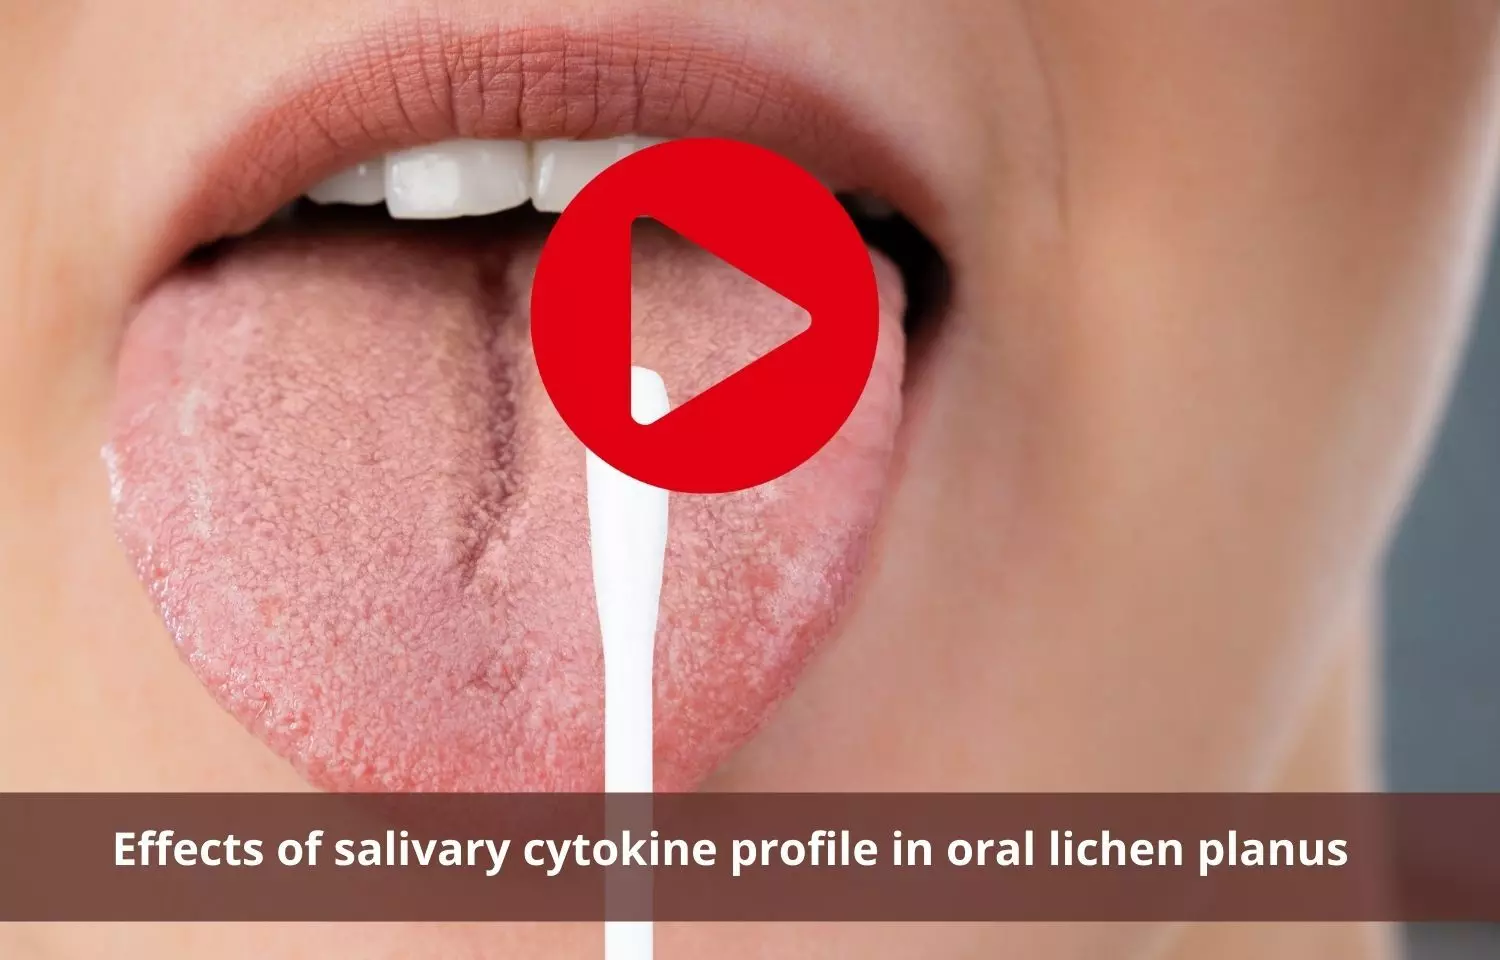 Role of salivary cytokine profile in oral lichen planus